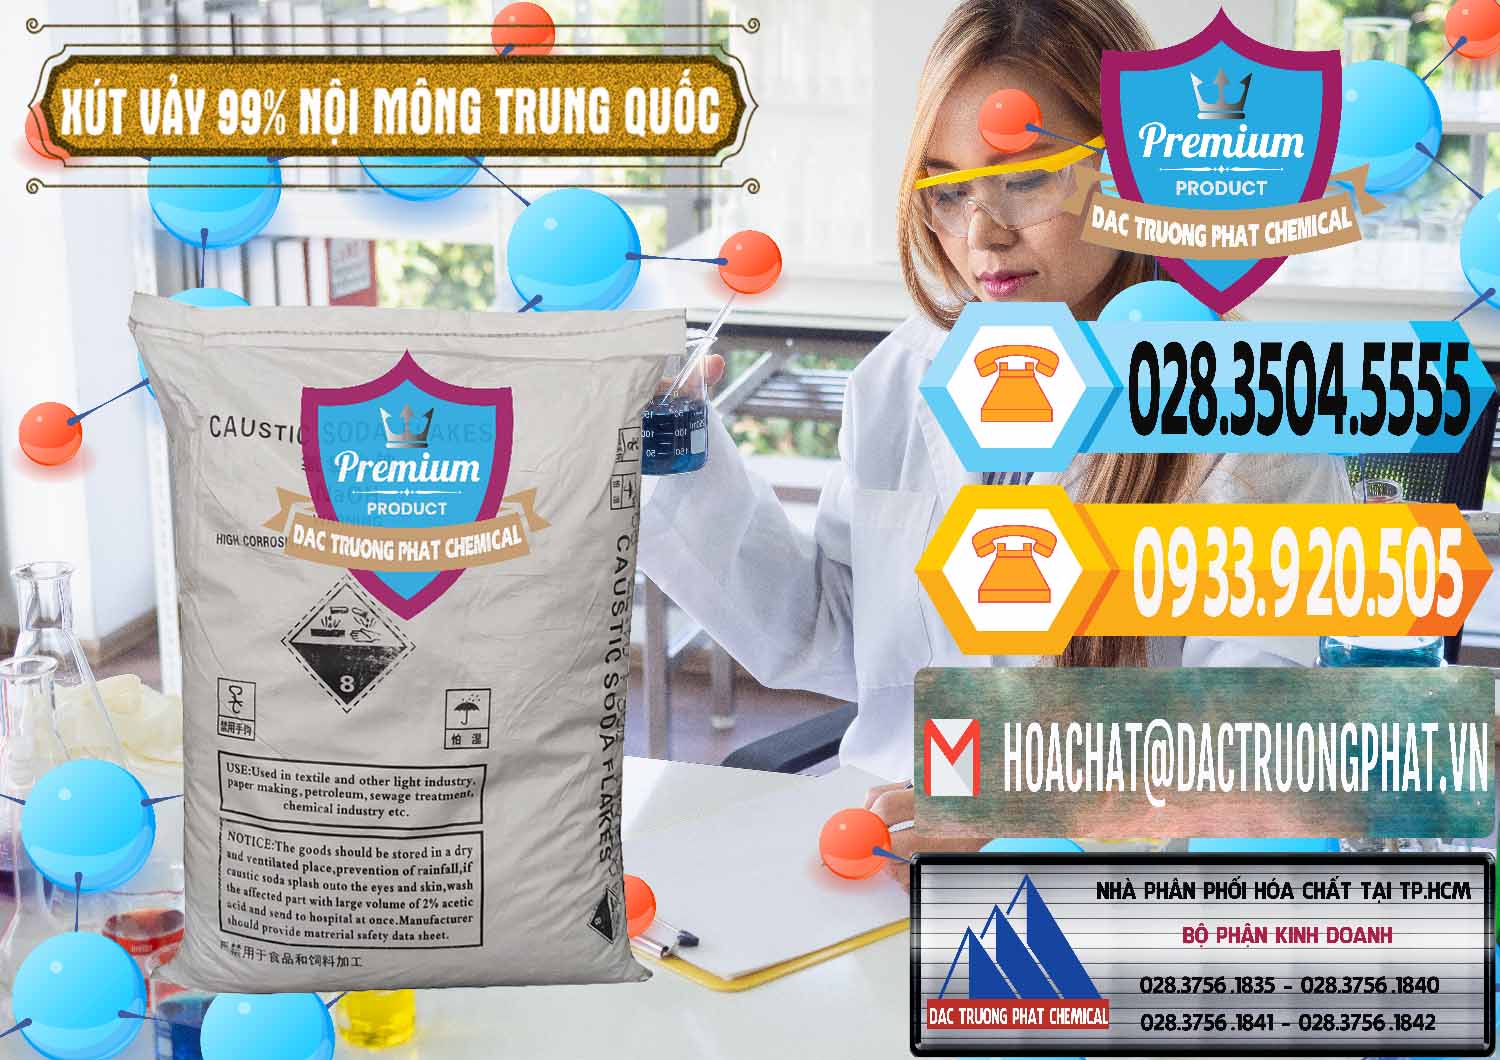 Cty chuyên nhập khẩu và bán Xút Vảy - NaOH Vảy 99% Nội Mông Trung Quốc China - 0228 - Chuyên phân phối _ nhập khẩu hóa chất tại TP.HCM - hoachattayrua.net